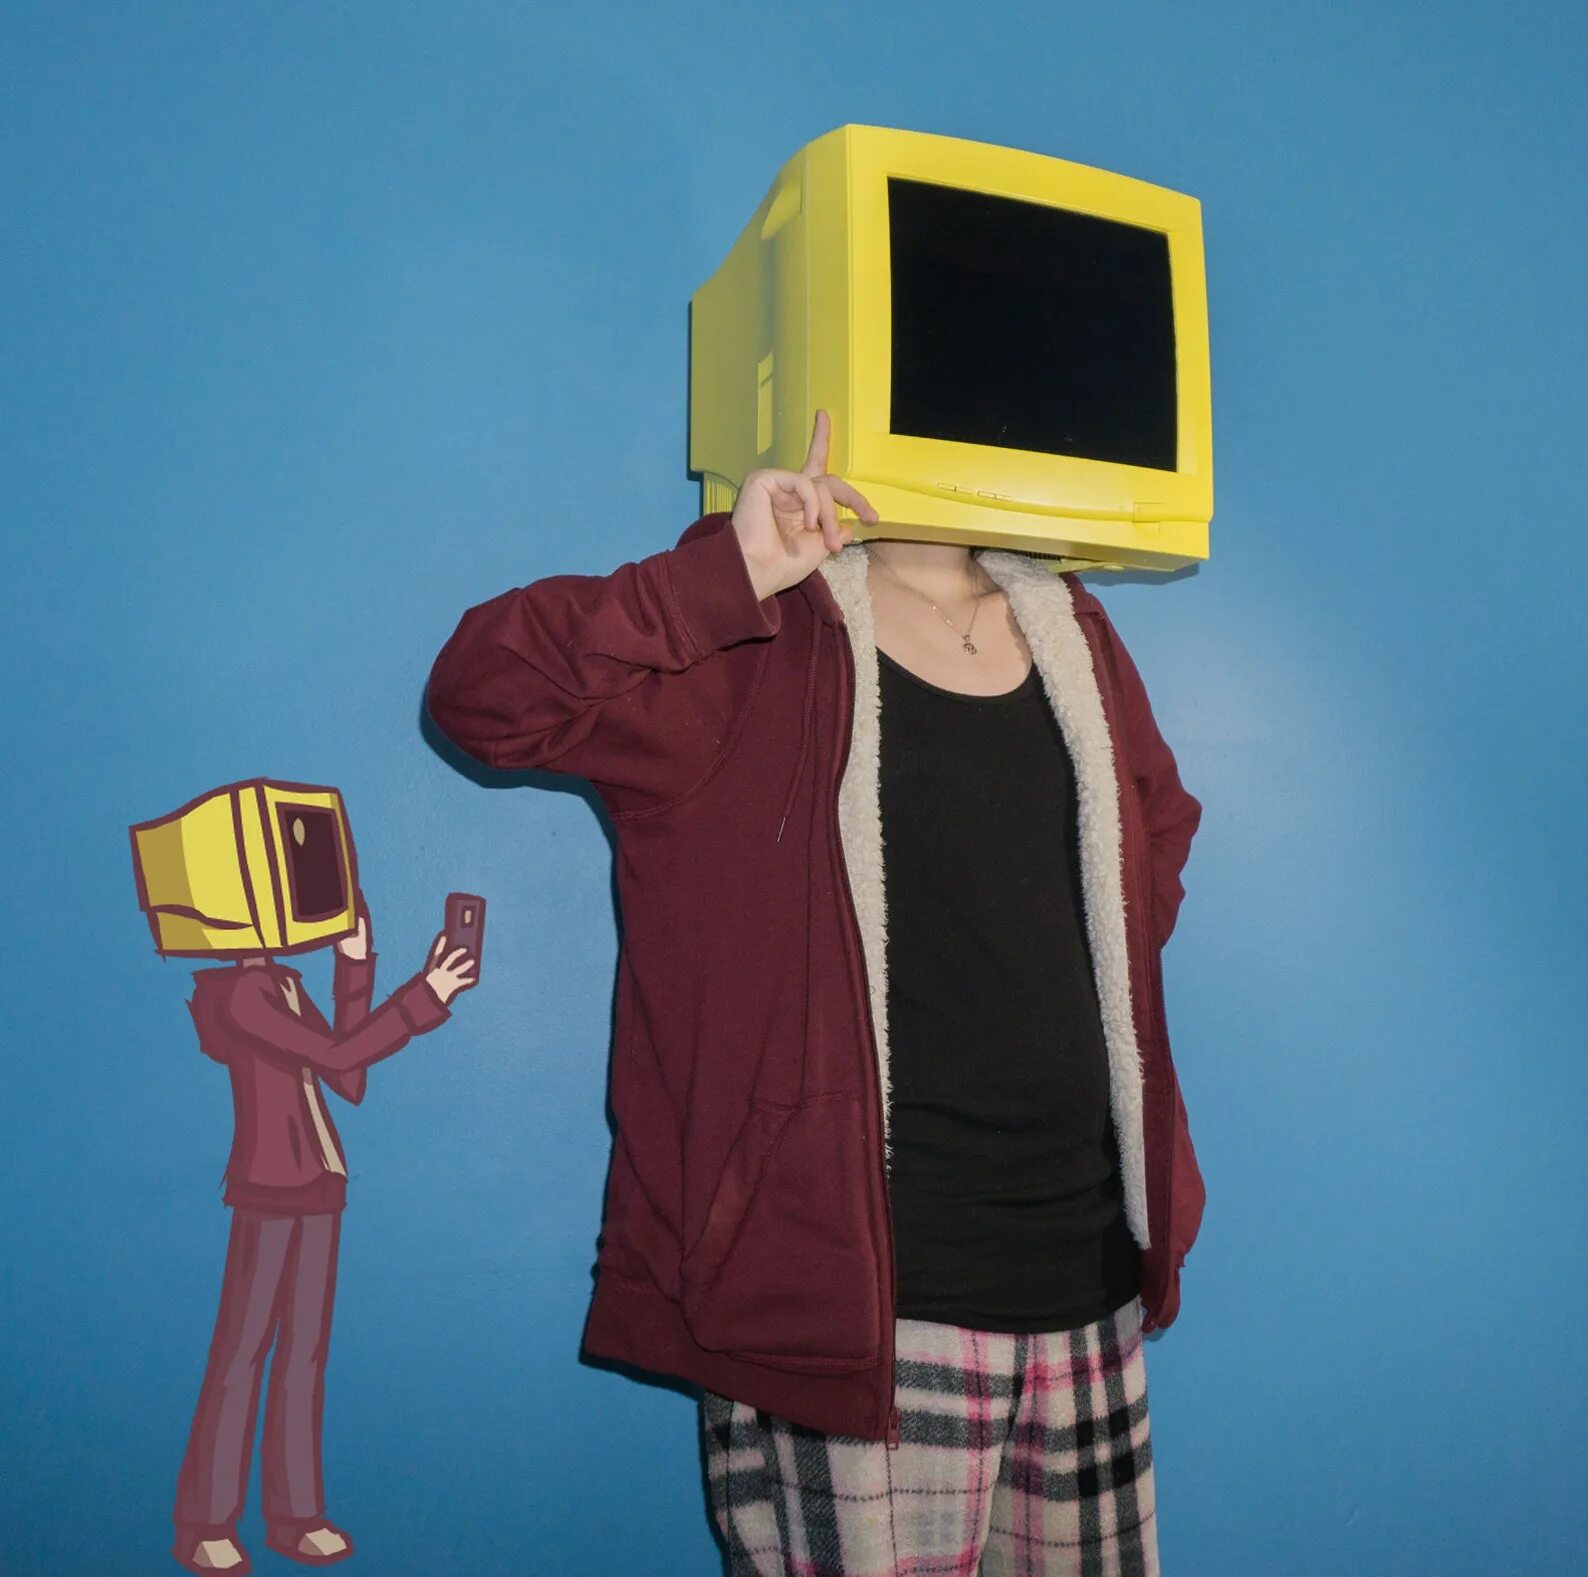 Телевизор вместо головы. Человек телевизор. Человек с головой телевизора. Человек с телевизором вместо головы.